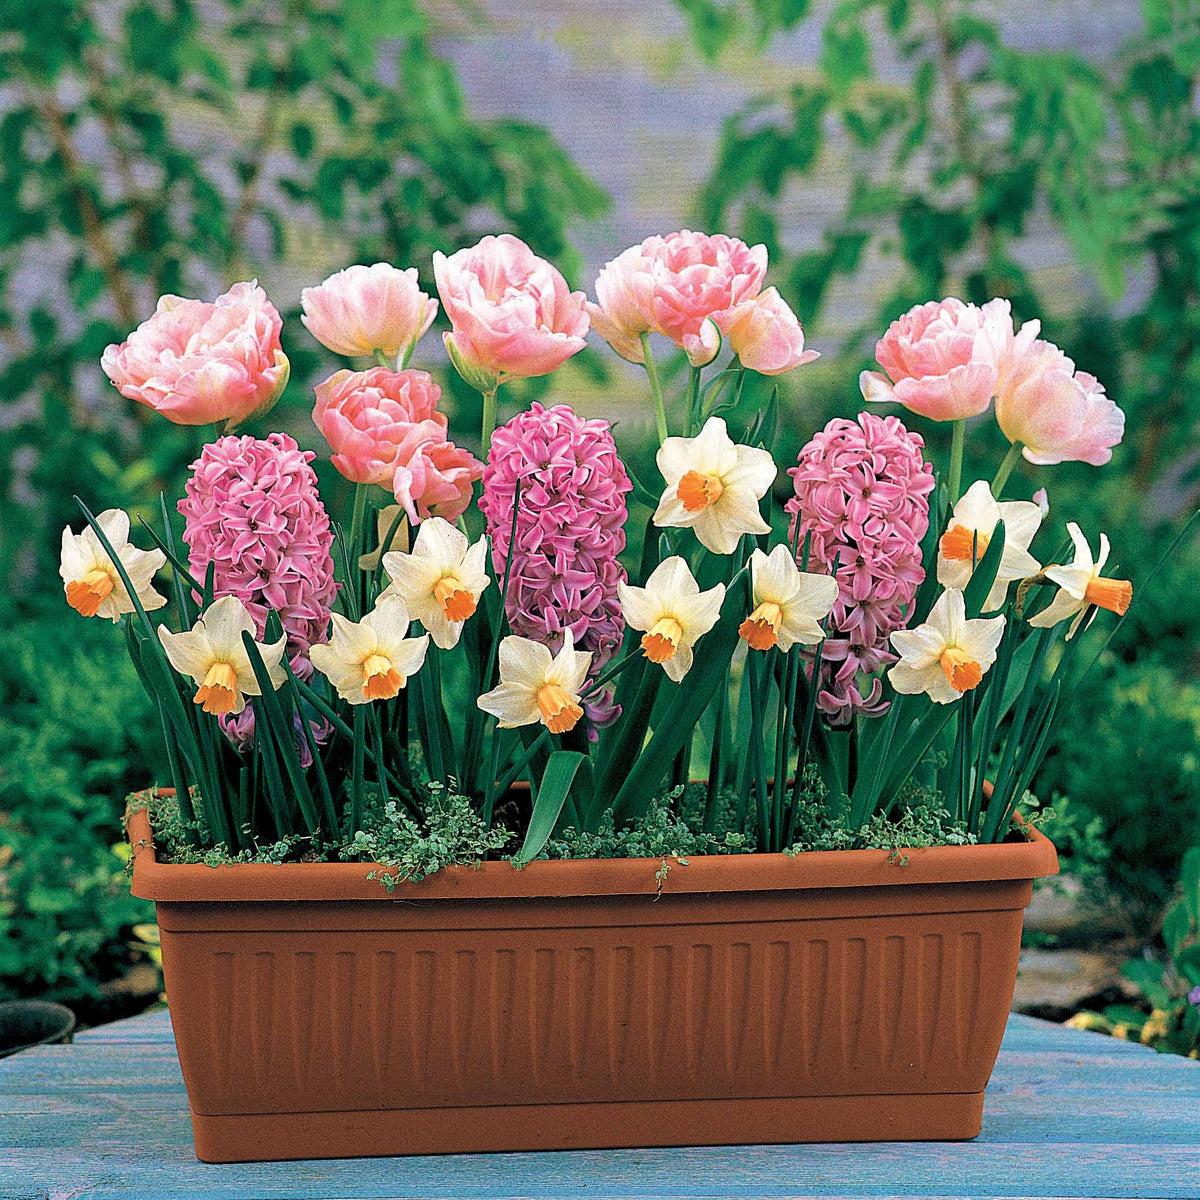 Bulbes à floraison printanière en mélange - Tulipa Angélique, Hyacinthus Fondant - Plantes